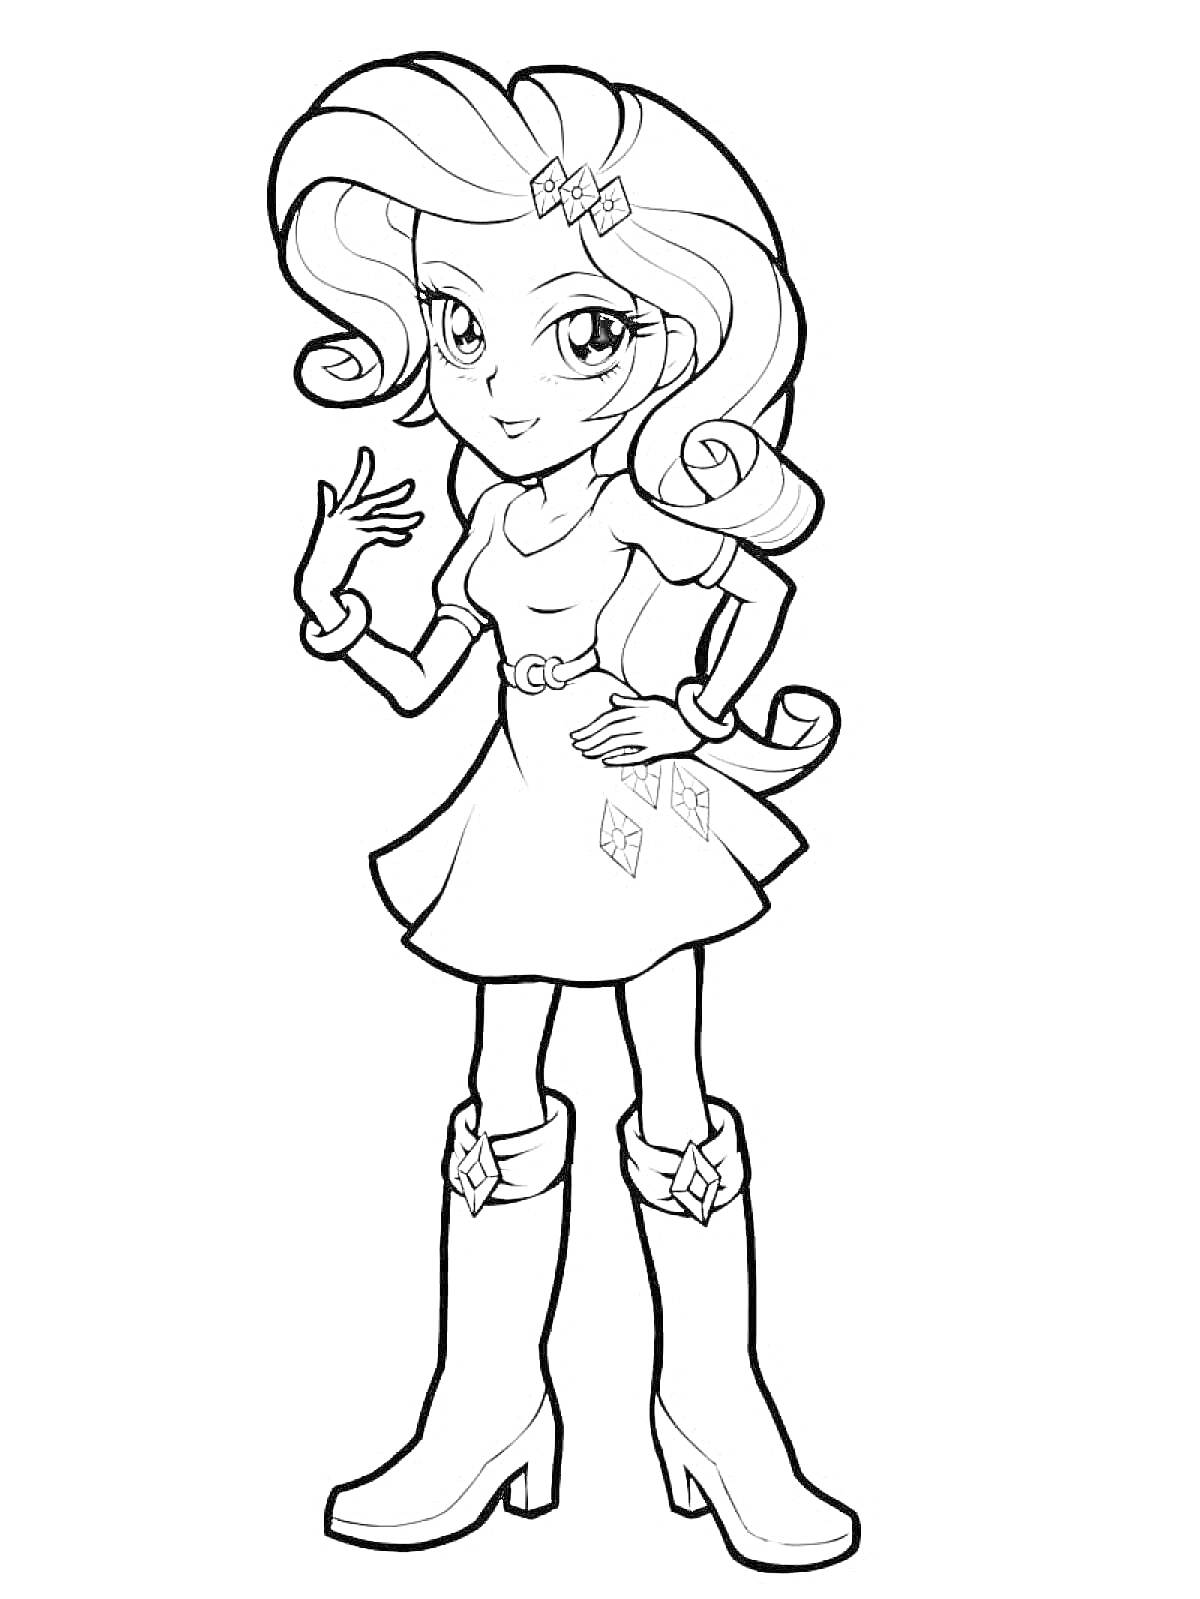 Раскраска Девушка с вьющимися волосами, двумя заколками-бантами, в платье с украшением на поясе и ботинках на каблуке